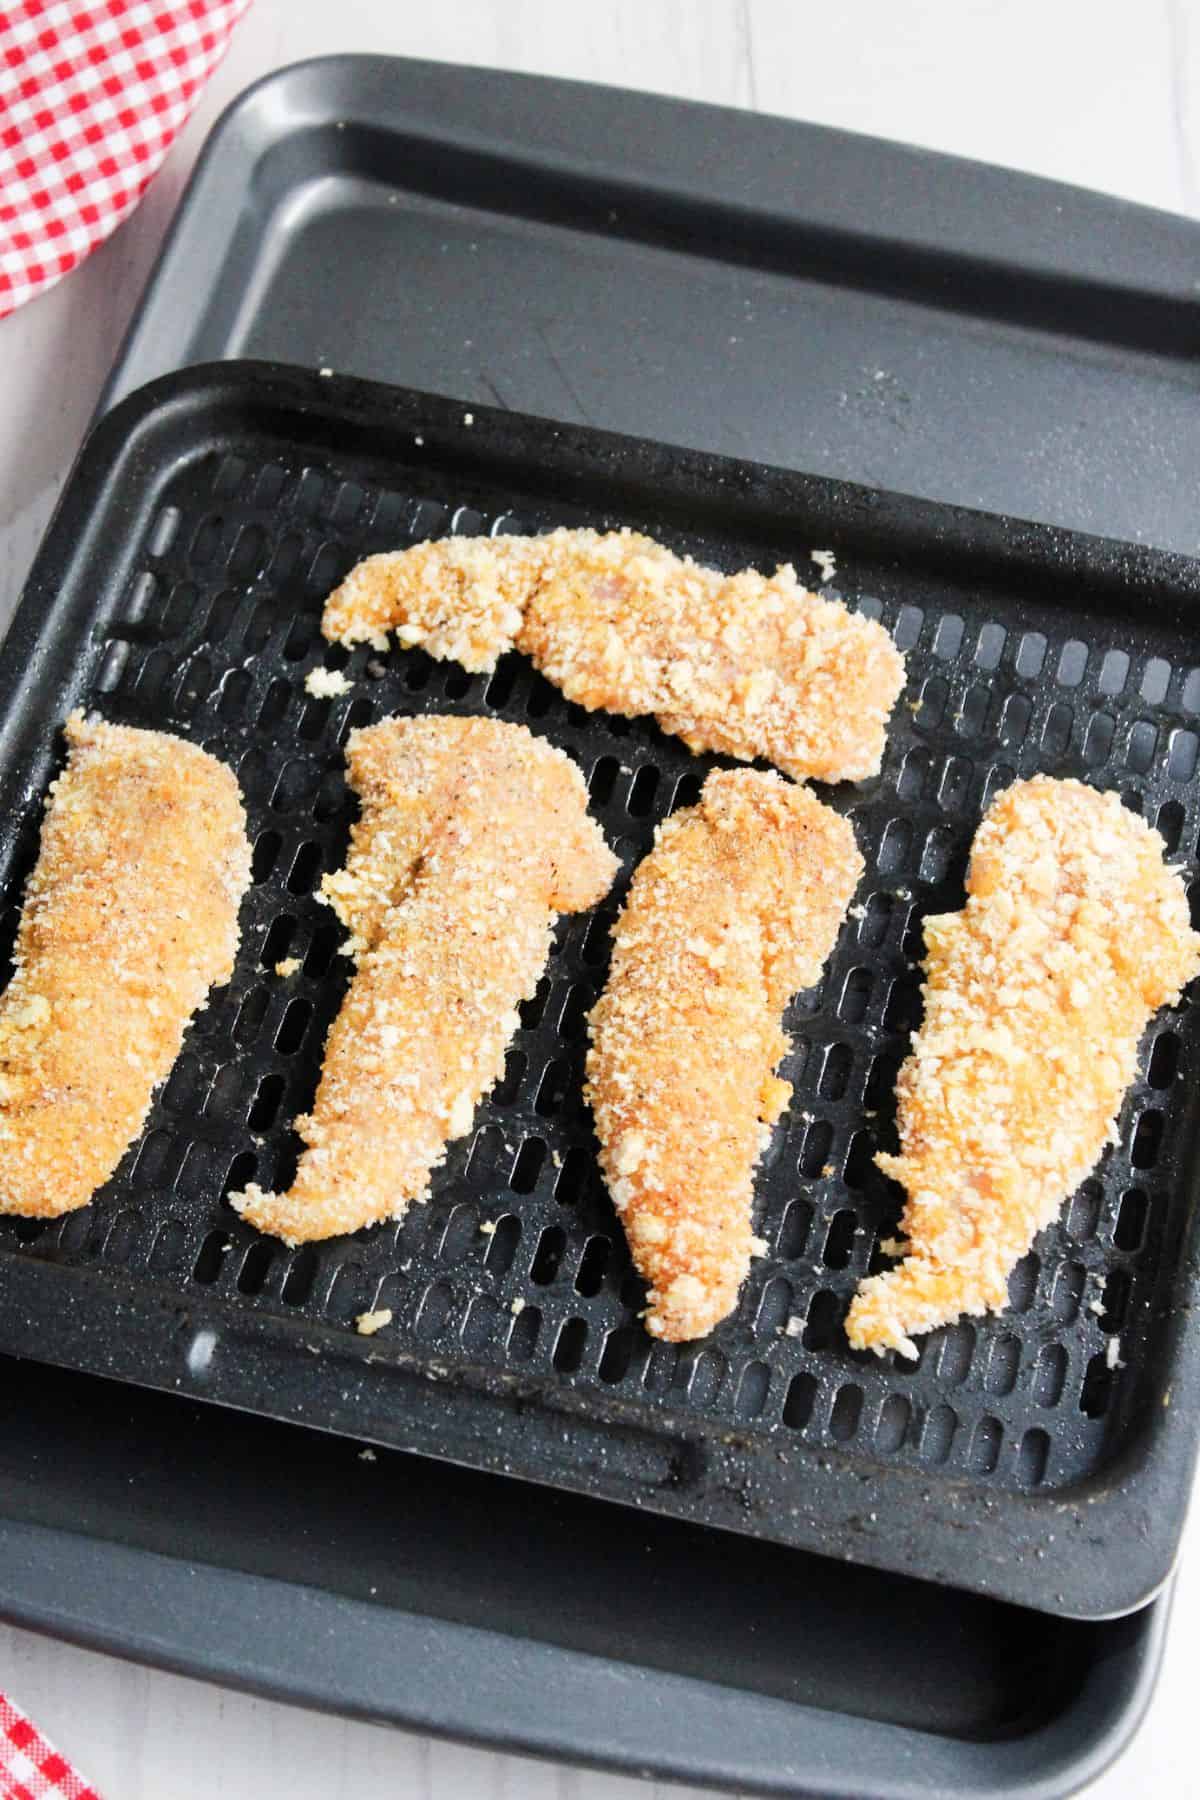 Prepared chicken tenders on air fryer tray.